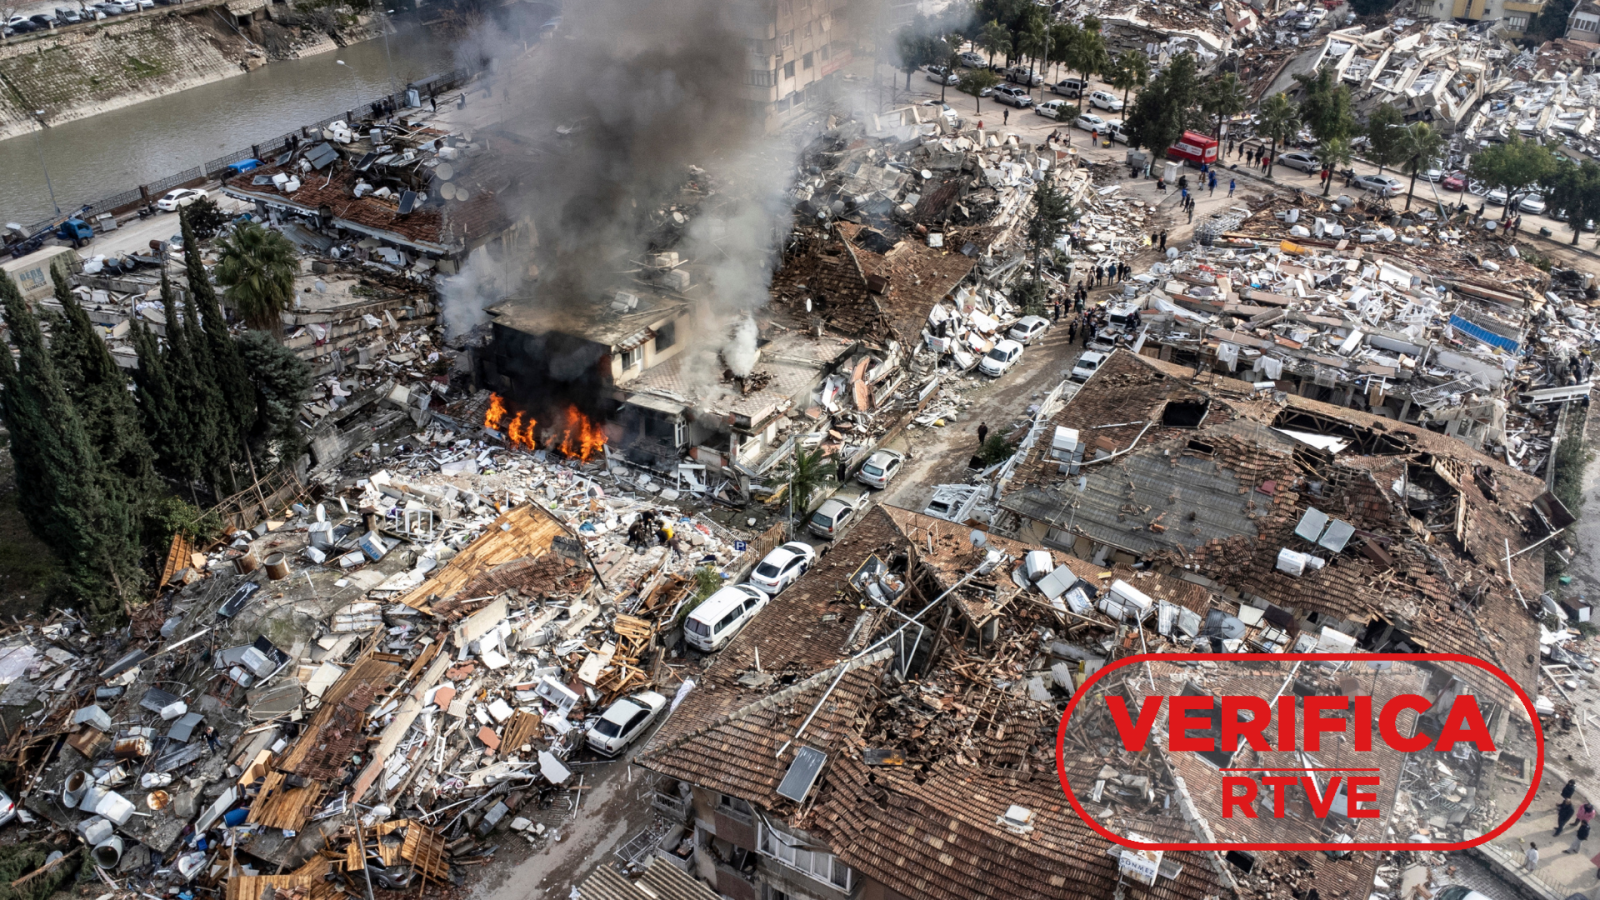 Fotografía del 7 de febrero 2023 que muestra un edificio en llamas entre otras construcciones derrumbadas después del terremoto en la provincia de Hatay (Turquía), con el sello 'VerificaRTVE' en rojo